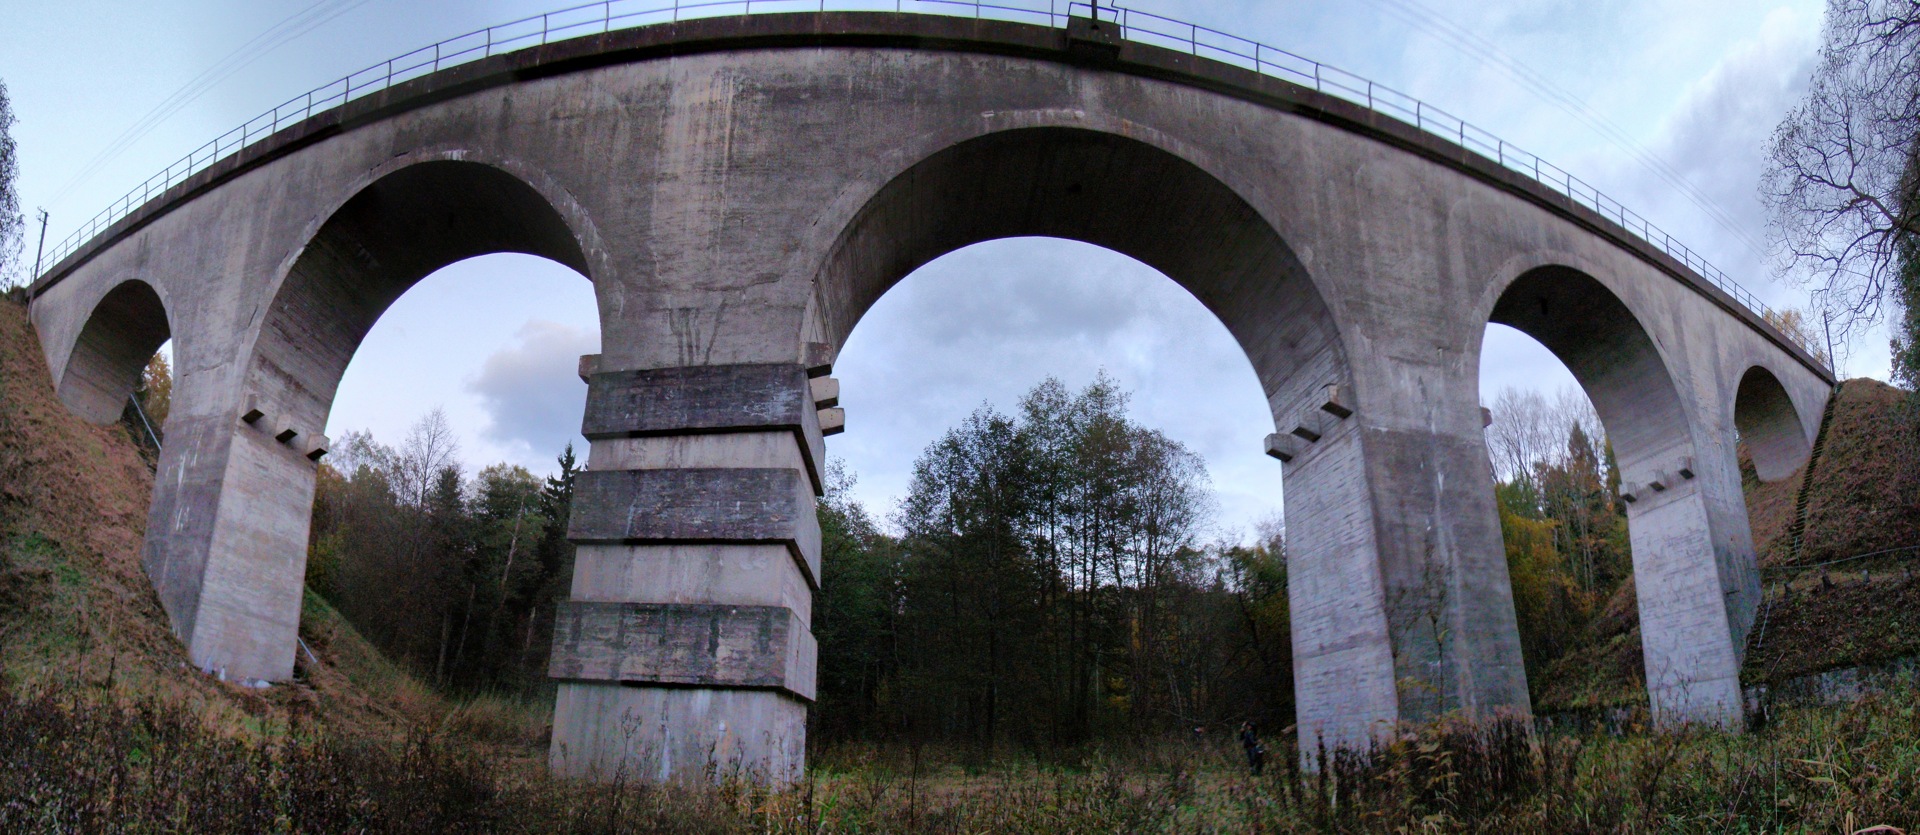 Краснолесье Калининградская область мост